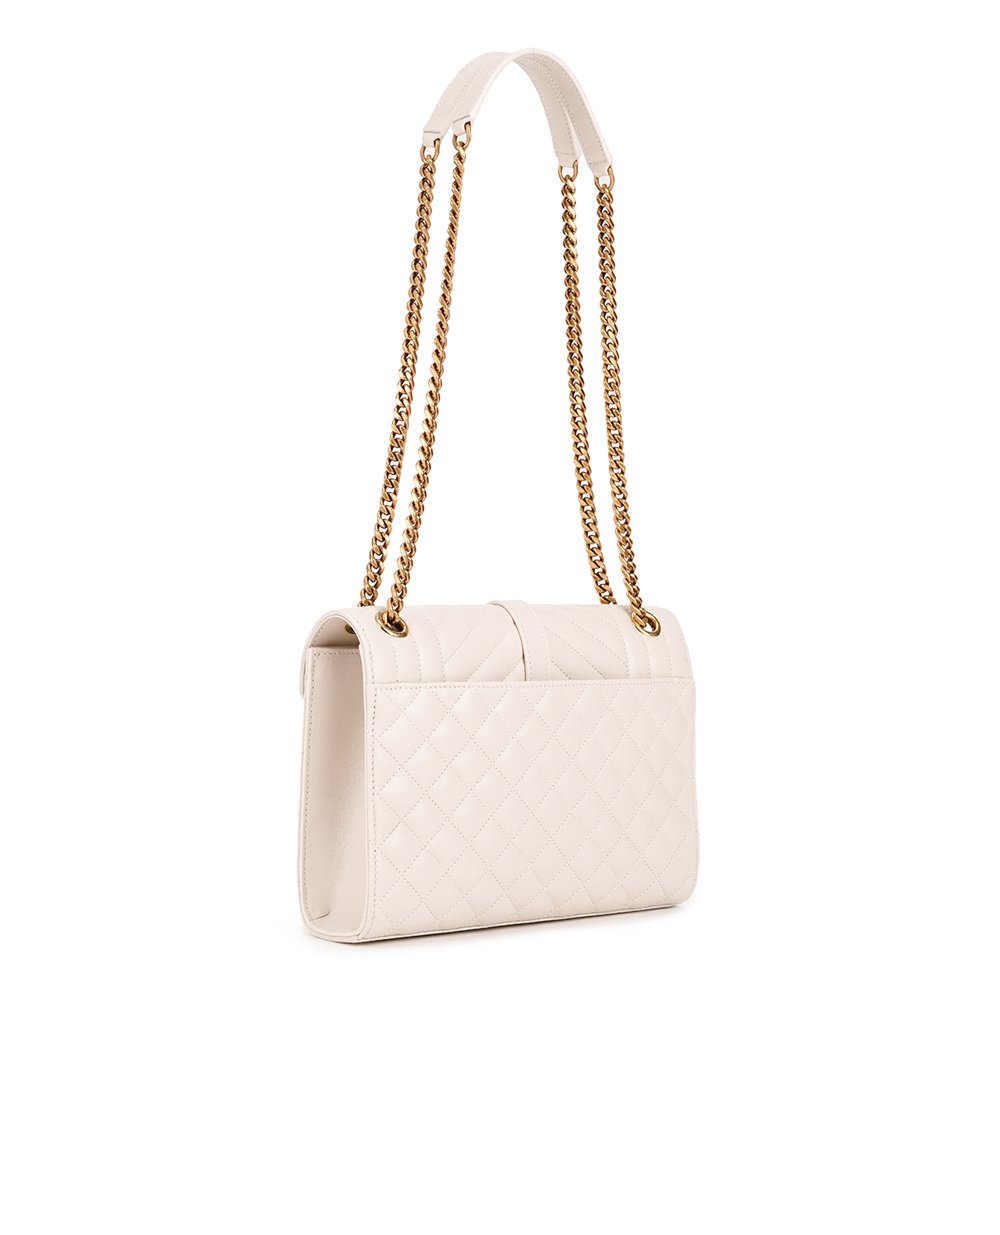 Кожаная сумка Envelope Medium Saint Laurent 600185-AACT7, бежевый цвет • Купить в интернет-магазине Kameron